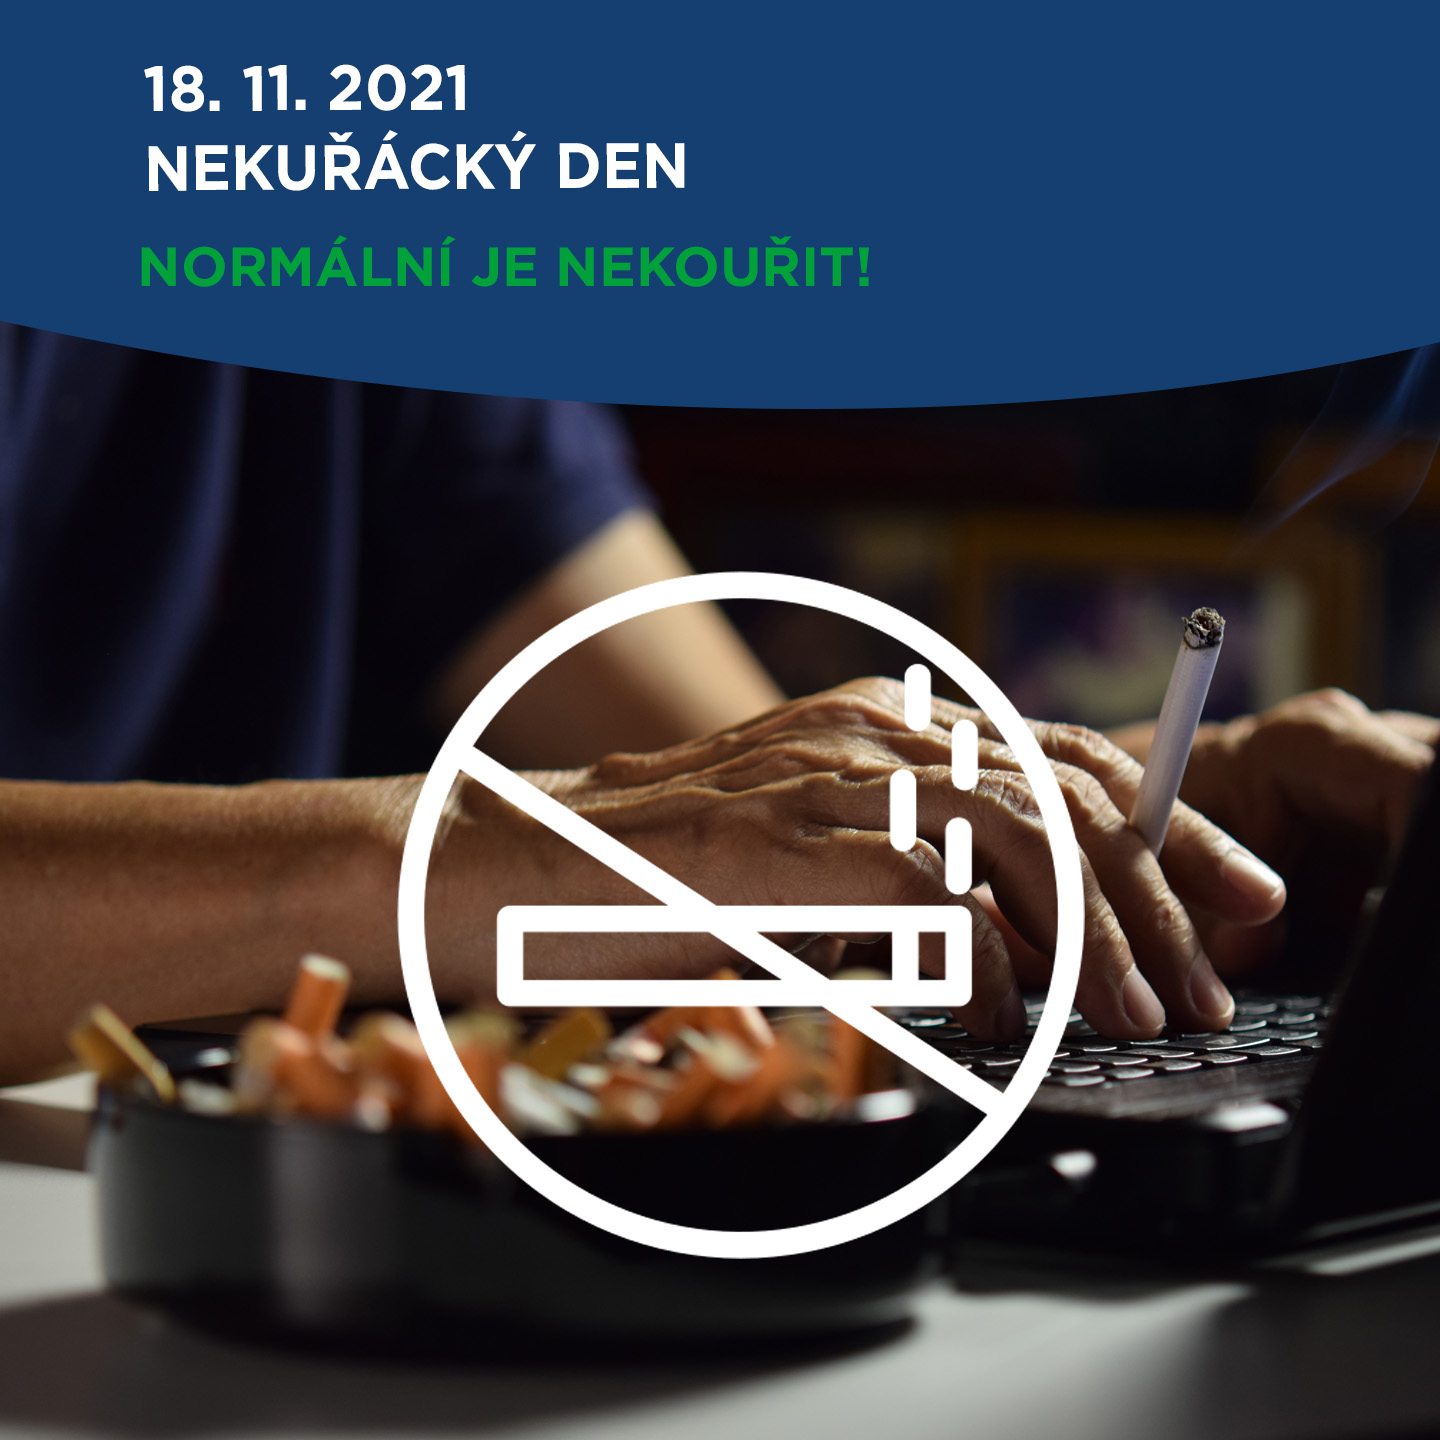 Nemocnice Roudnice nad Labem - aktuality - Mezinárodní nekuřácký den